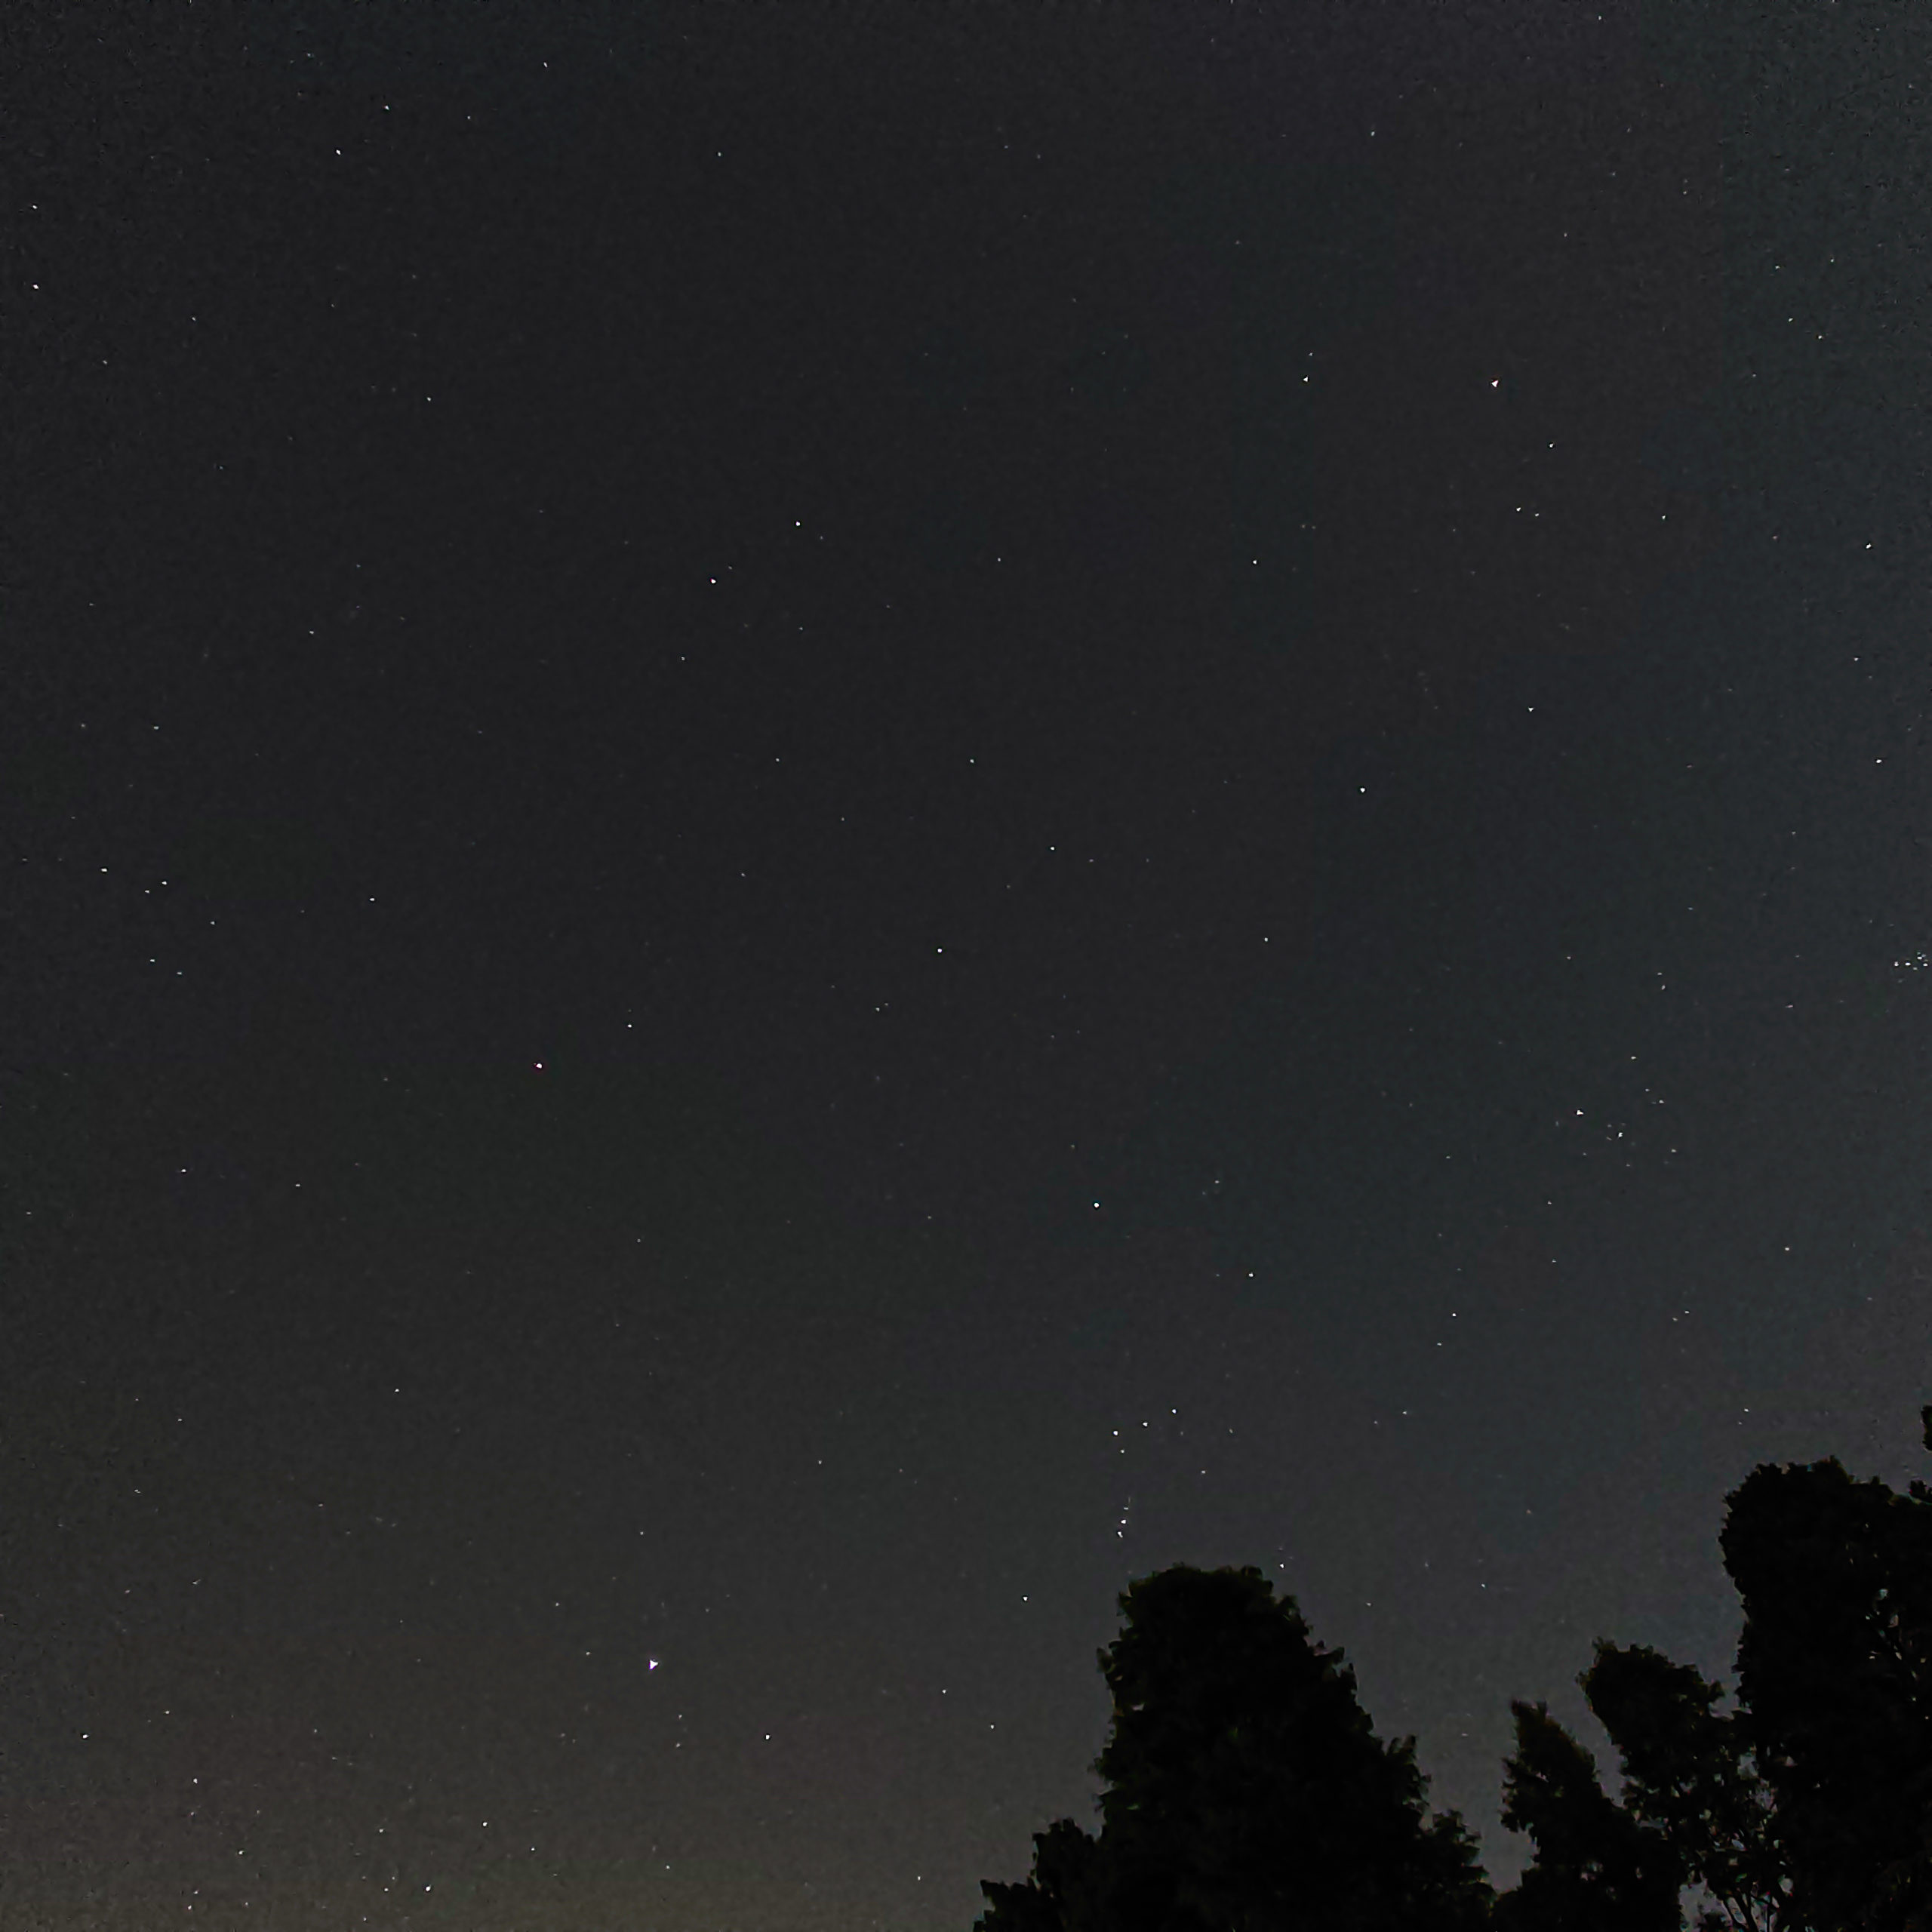 オリオン座 スマホで写真をとってみた 星空部 スマホで星をもっと身近に